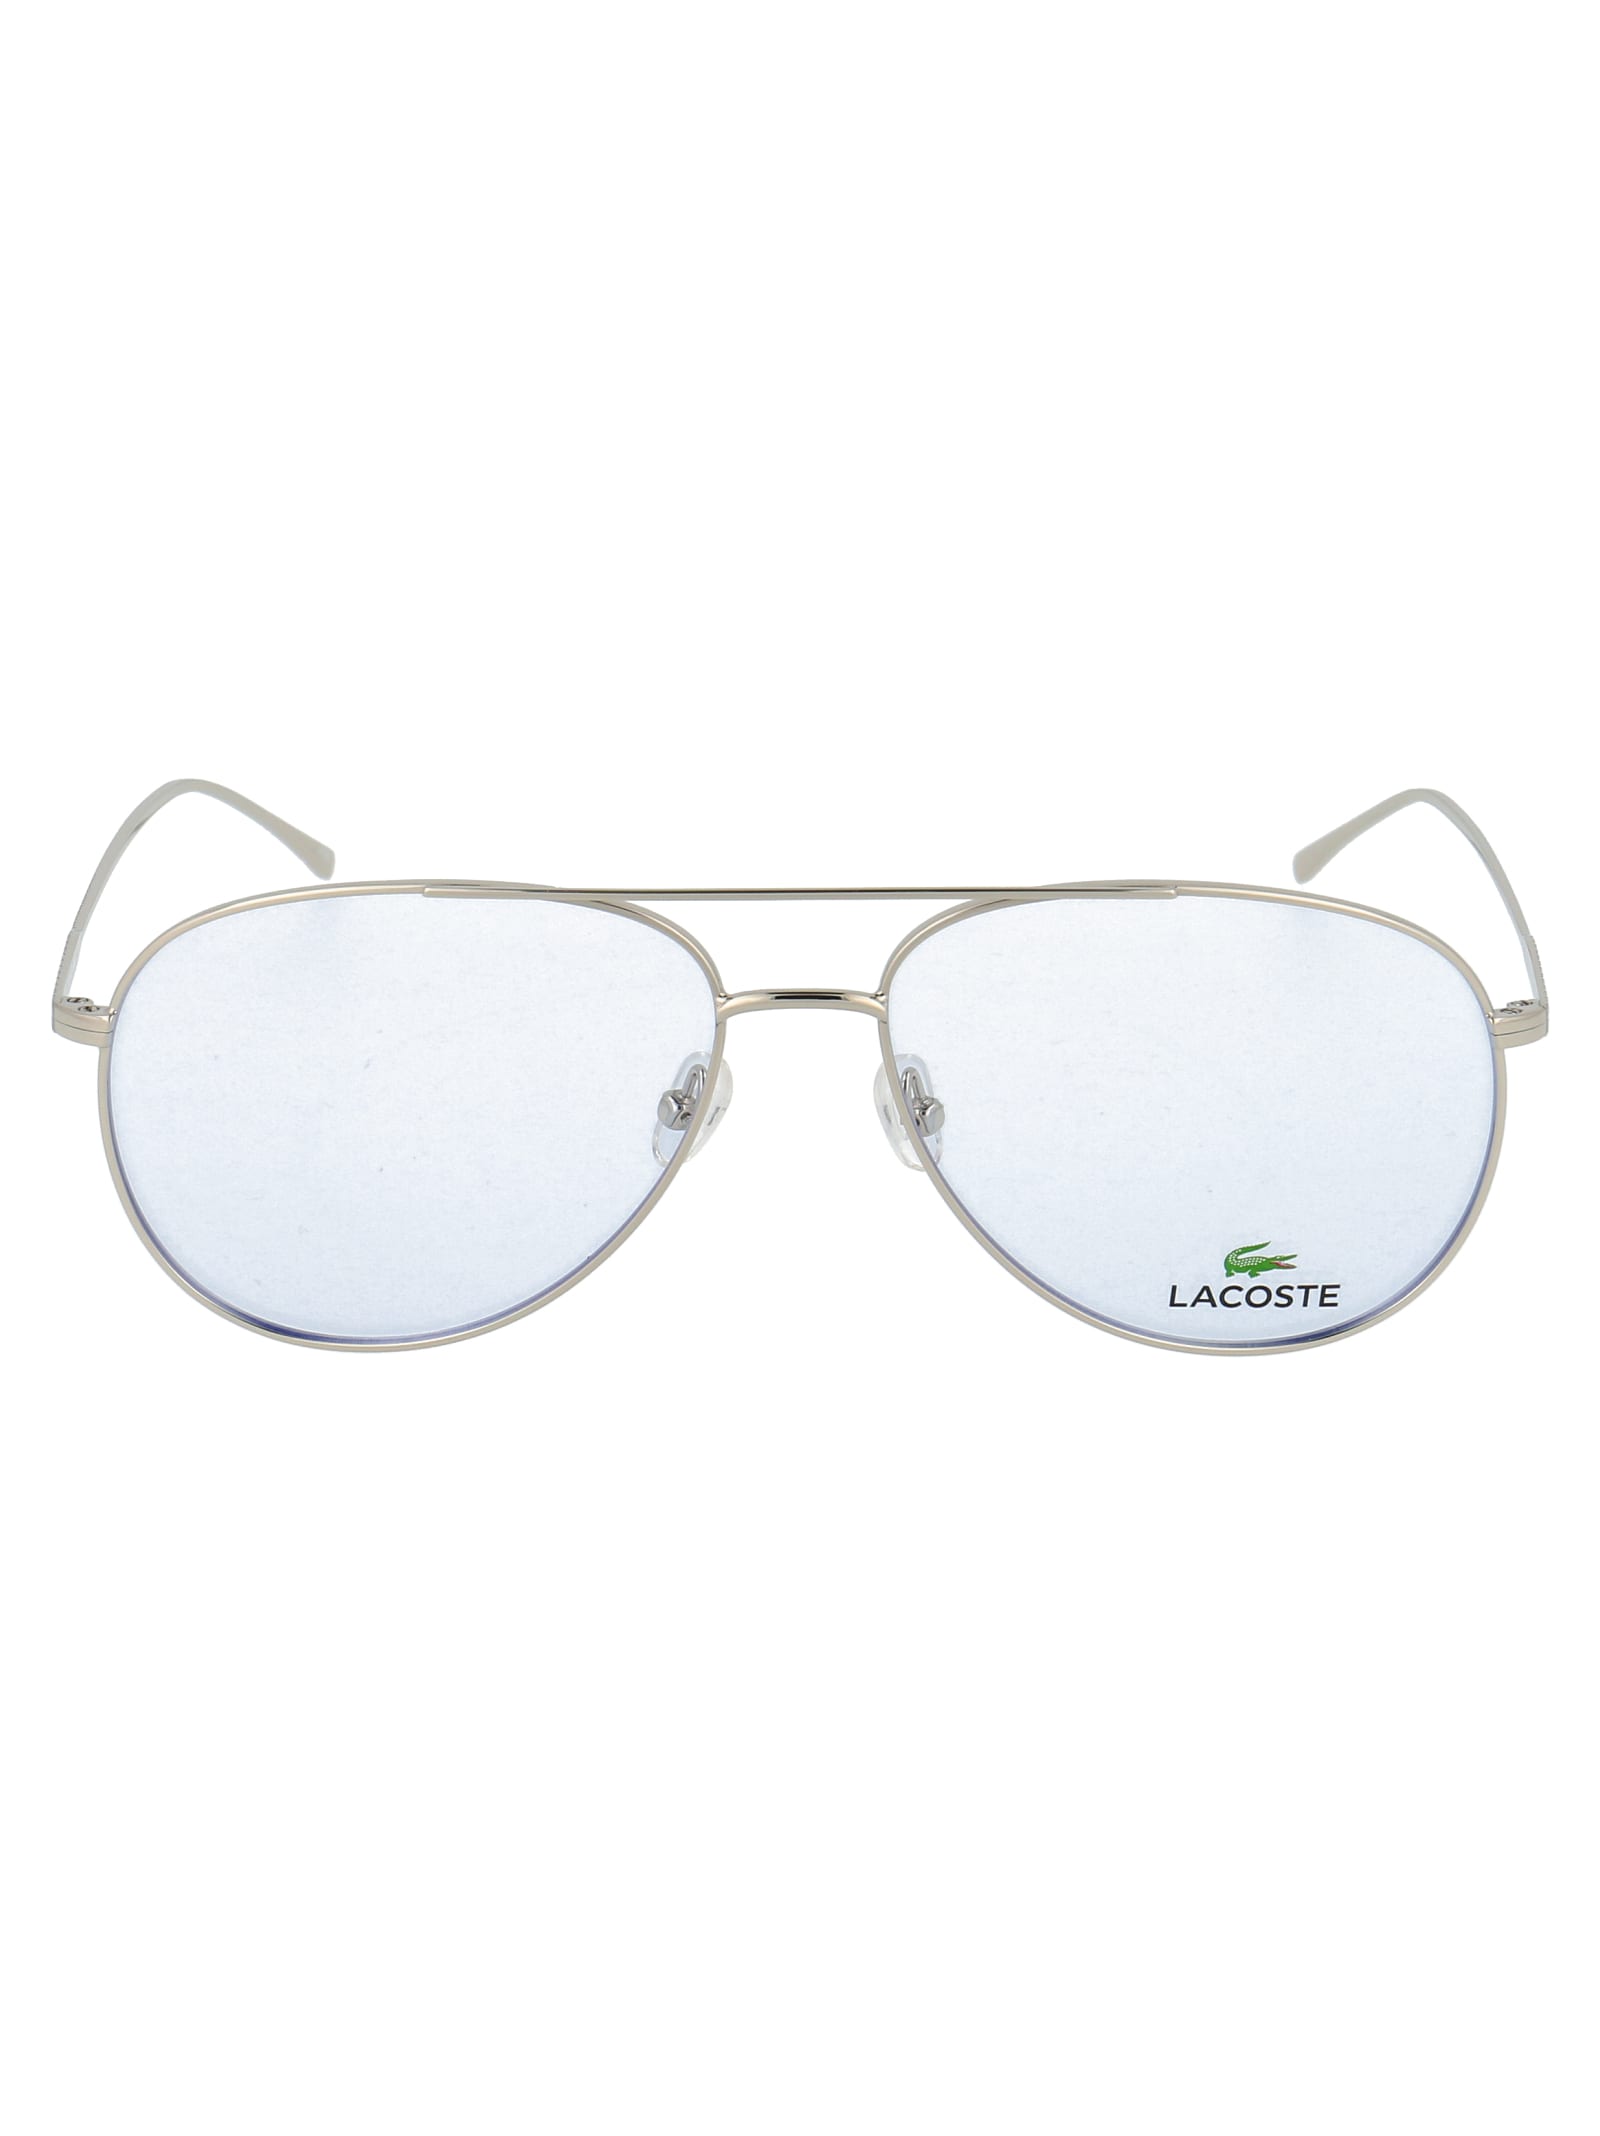 Lacoste L2505pc Glasses In 028 Silver